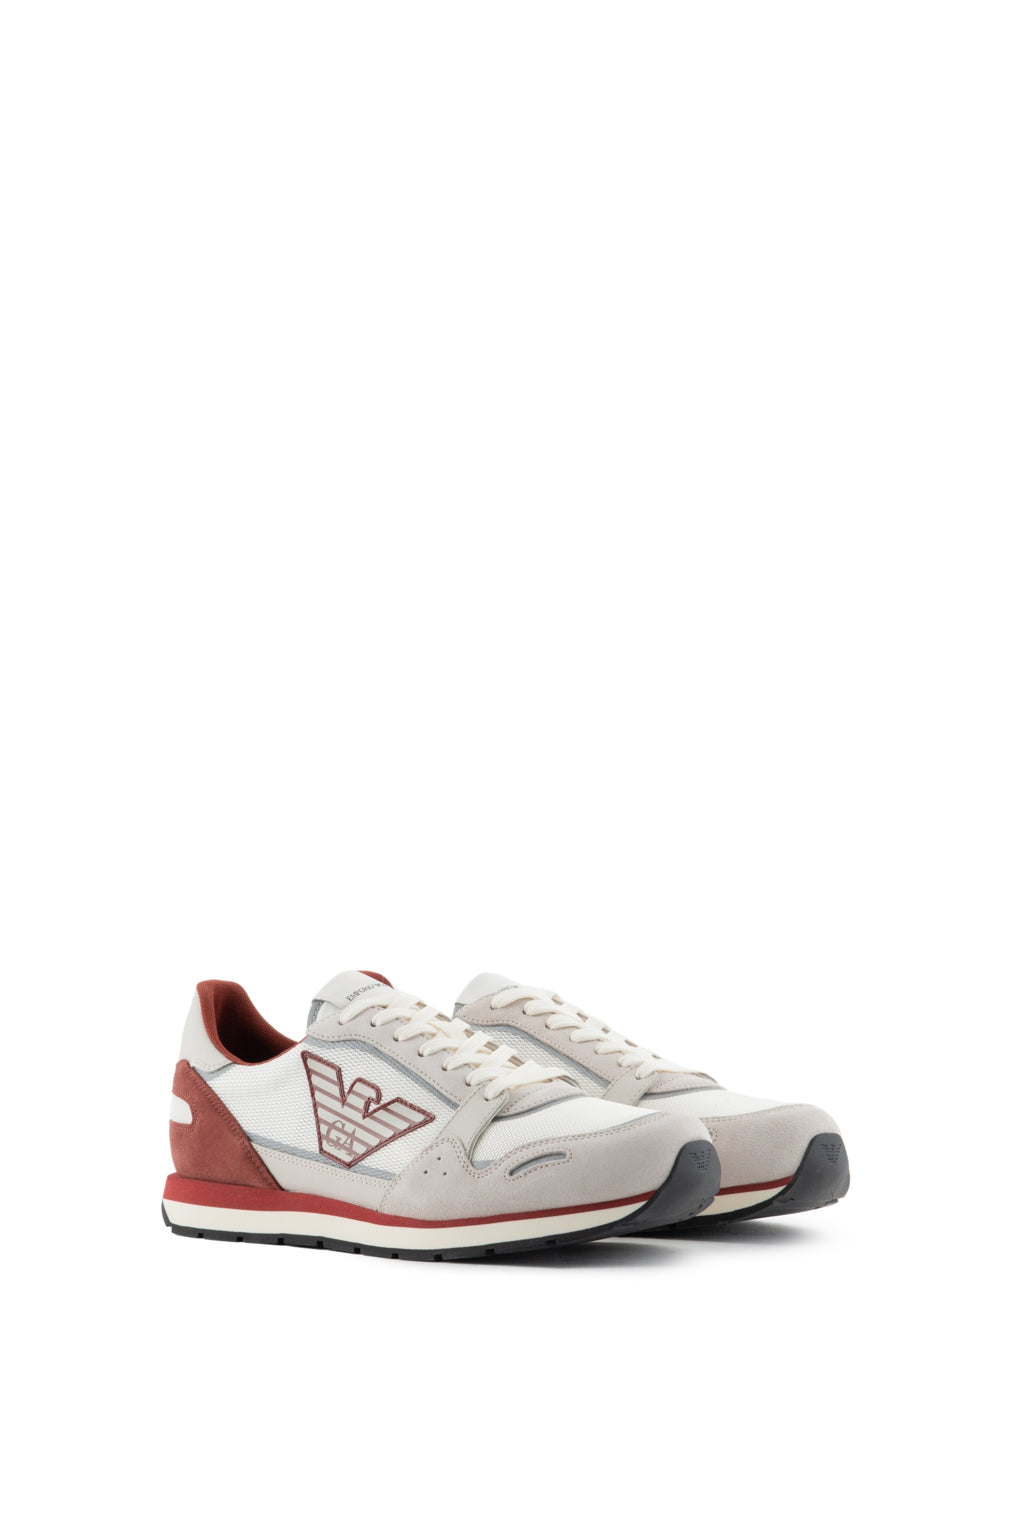 Sneakers Emporio Armani Bianco e Rosso 39,5 - mem39